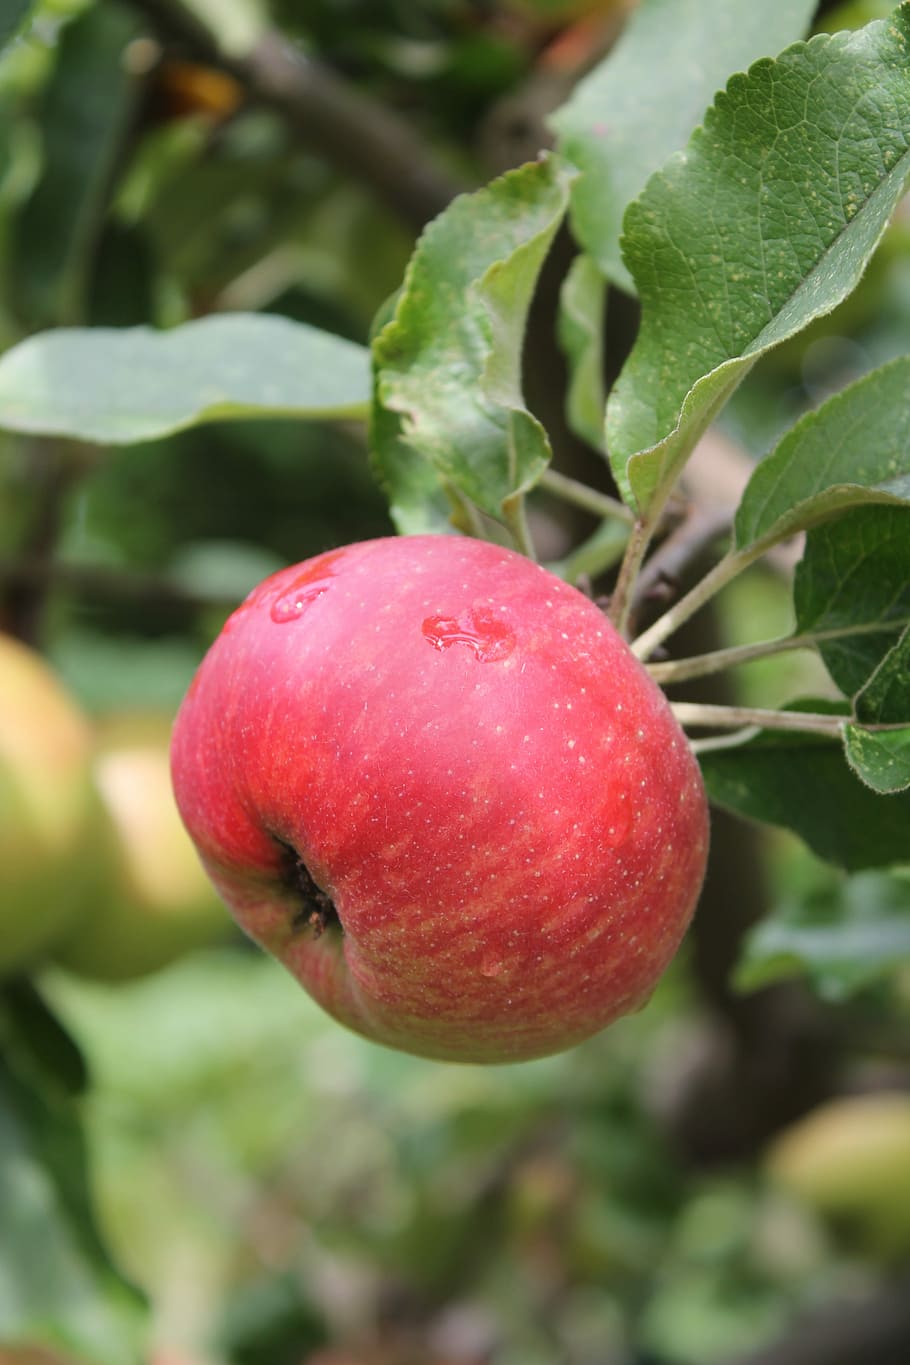 Apple, Árvore, maçã, árvore, verão, vermelho, comida e bebida, frutas, agricultura, alimentação saudável